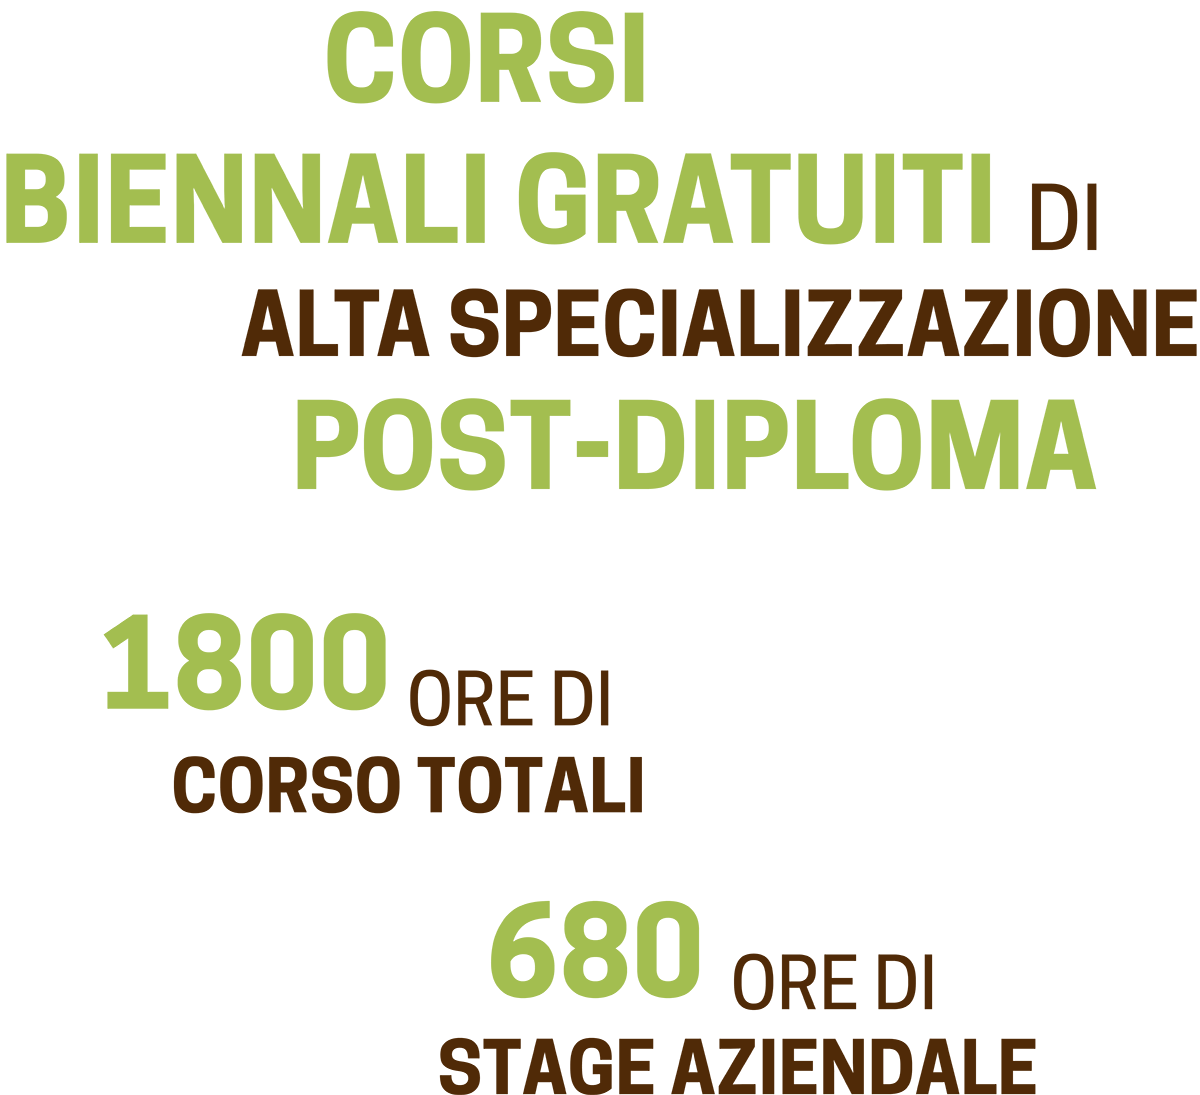 Corsi biennali di alta specializzazione post diploma - ITS Agroalimentare per il Piemonte